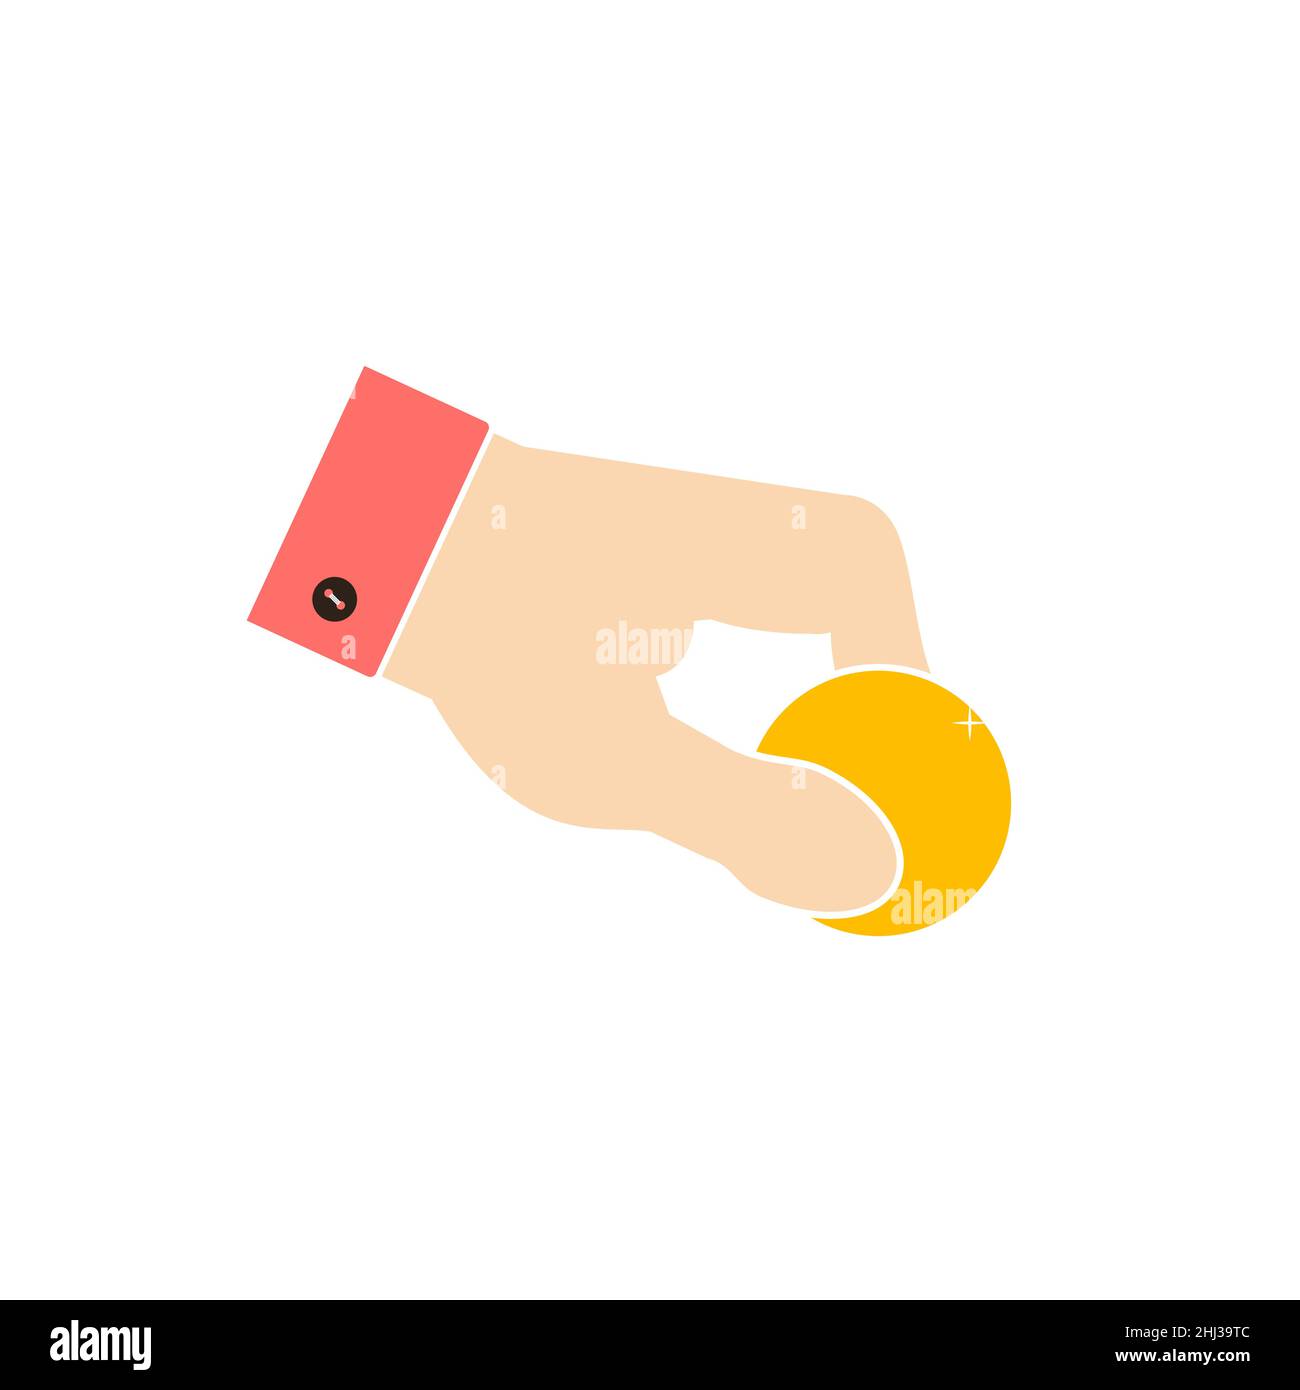 Eine menschliche Hand hält eine Münze. Hand gibt eine Goldmünze. Rosa Hemdkragen mit schwarzem Knopf. Ausgabe eines Darlehens, Gehalt, Almosen, Wohltätigkeitszeichen. Flache Vektorgrafik Stock Vektor